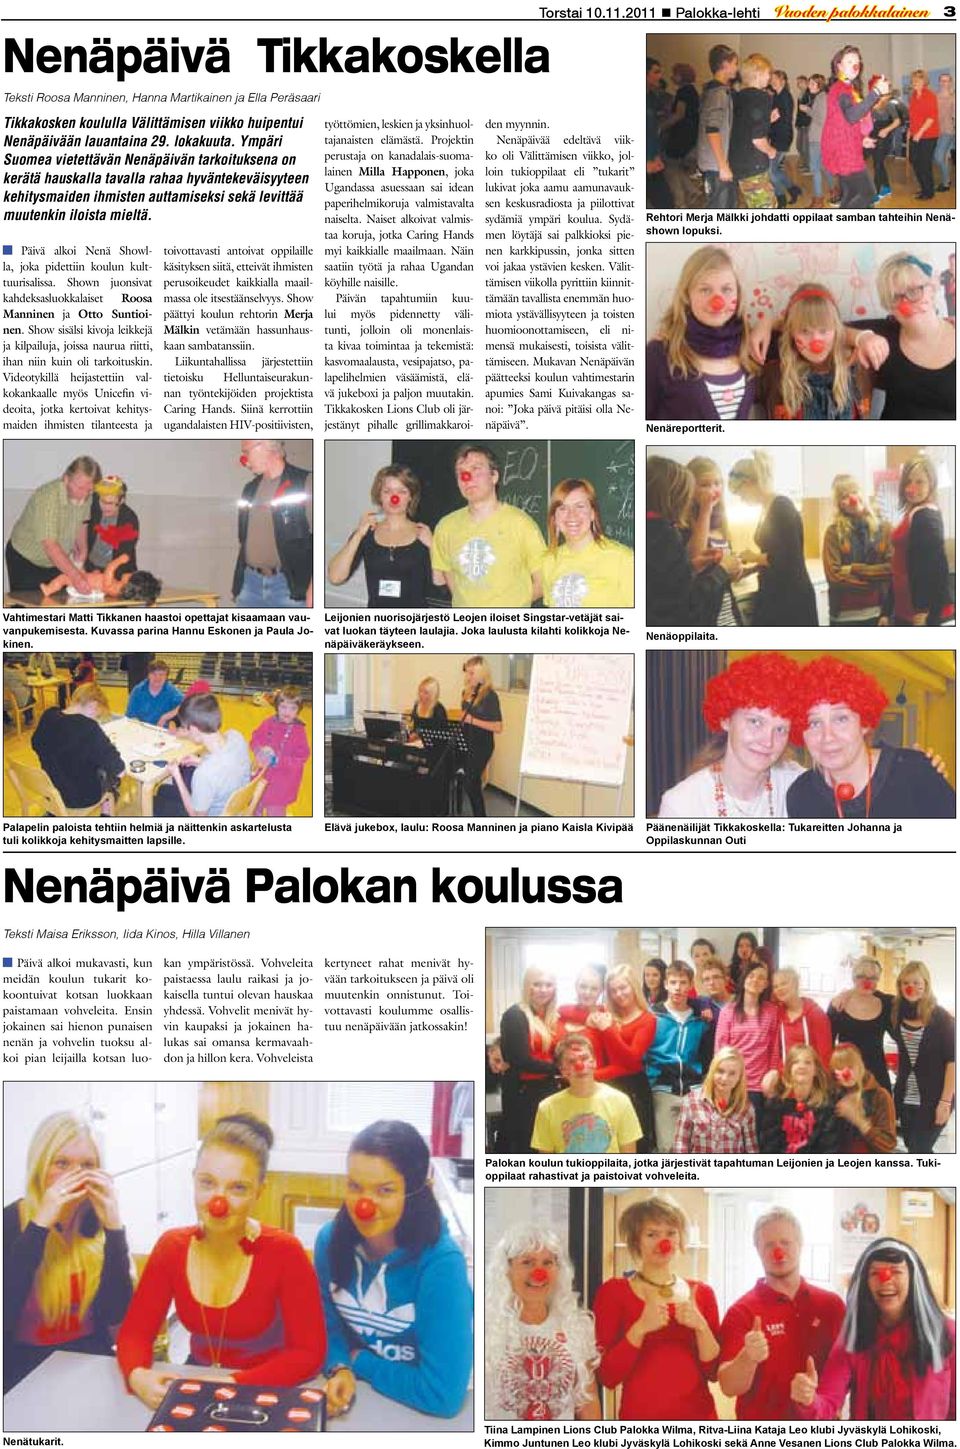 Päivä alkoi Nenä Showlla, joka pidettiin koulun kulttuurisalissa. Shown juonsivat kahdeksasluokkalaiset Roosa Manninen ja Otto Suntioinen.